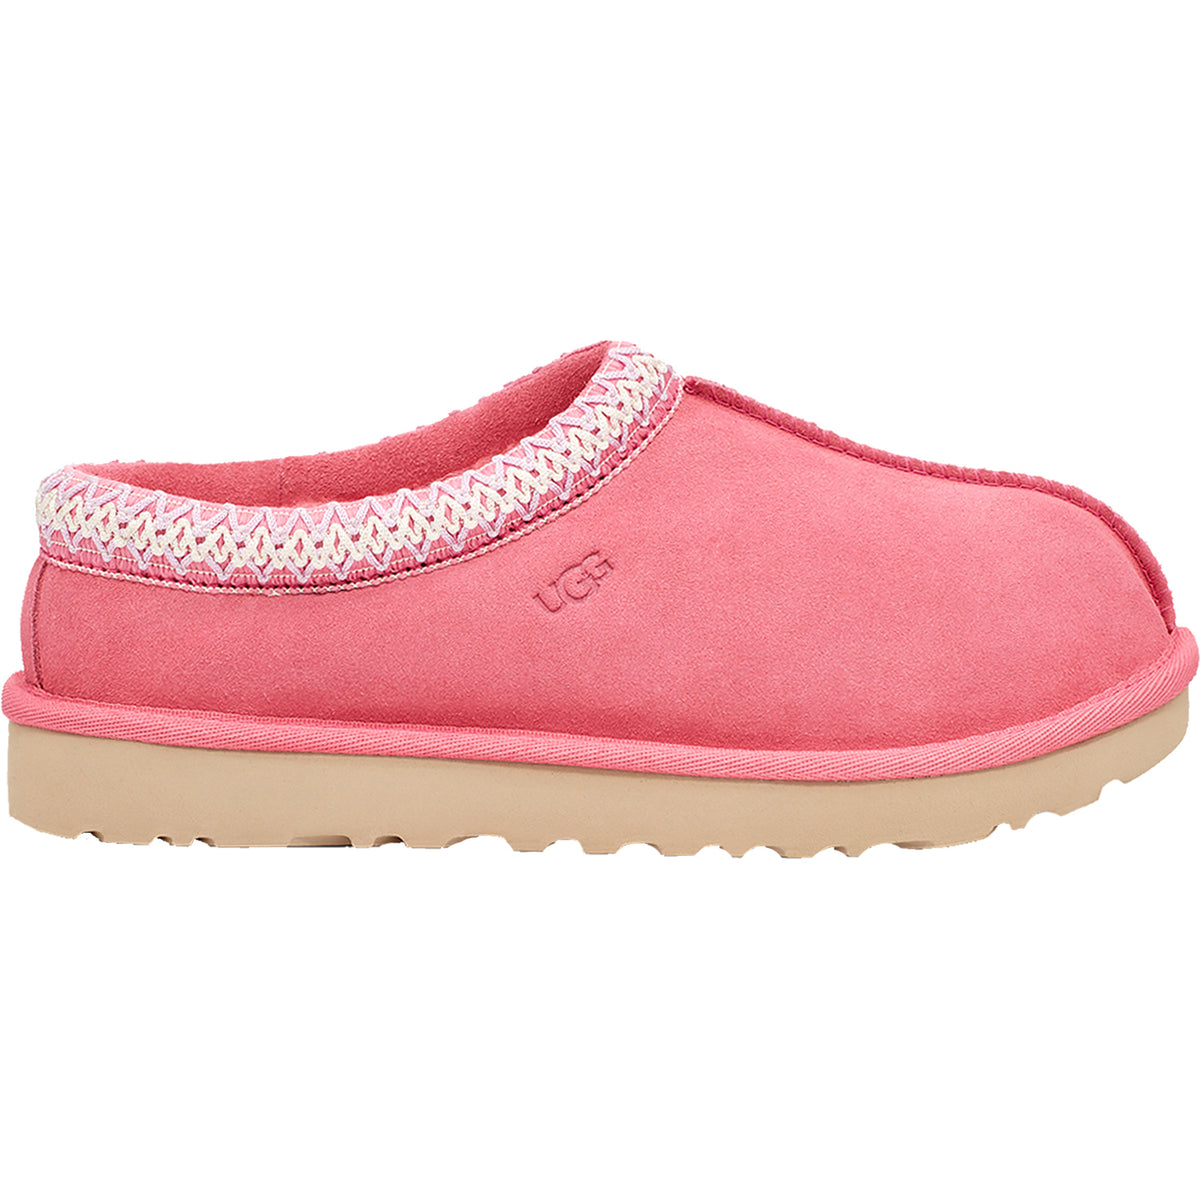 Women's UGG Tasman Pink Rose Suede – Footwear etc.